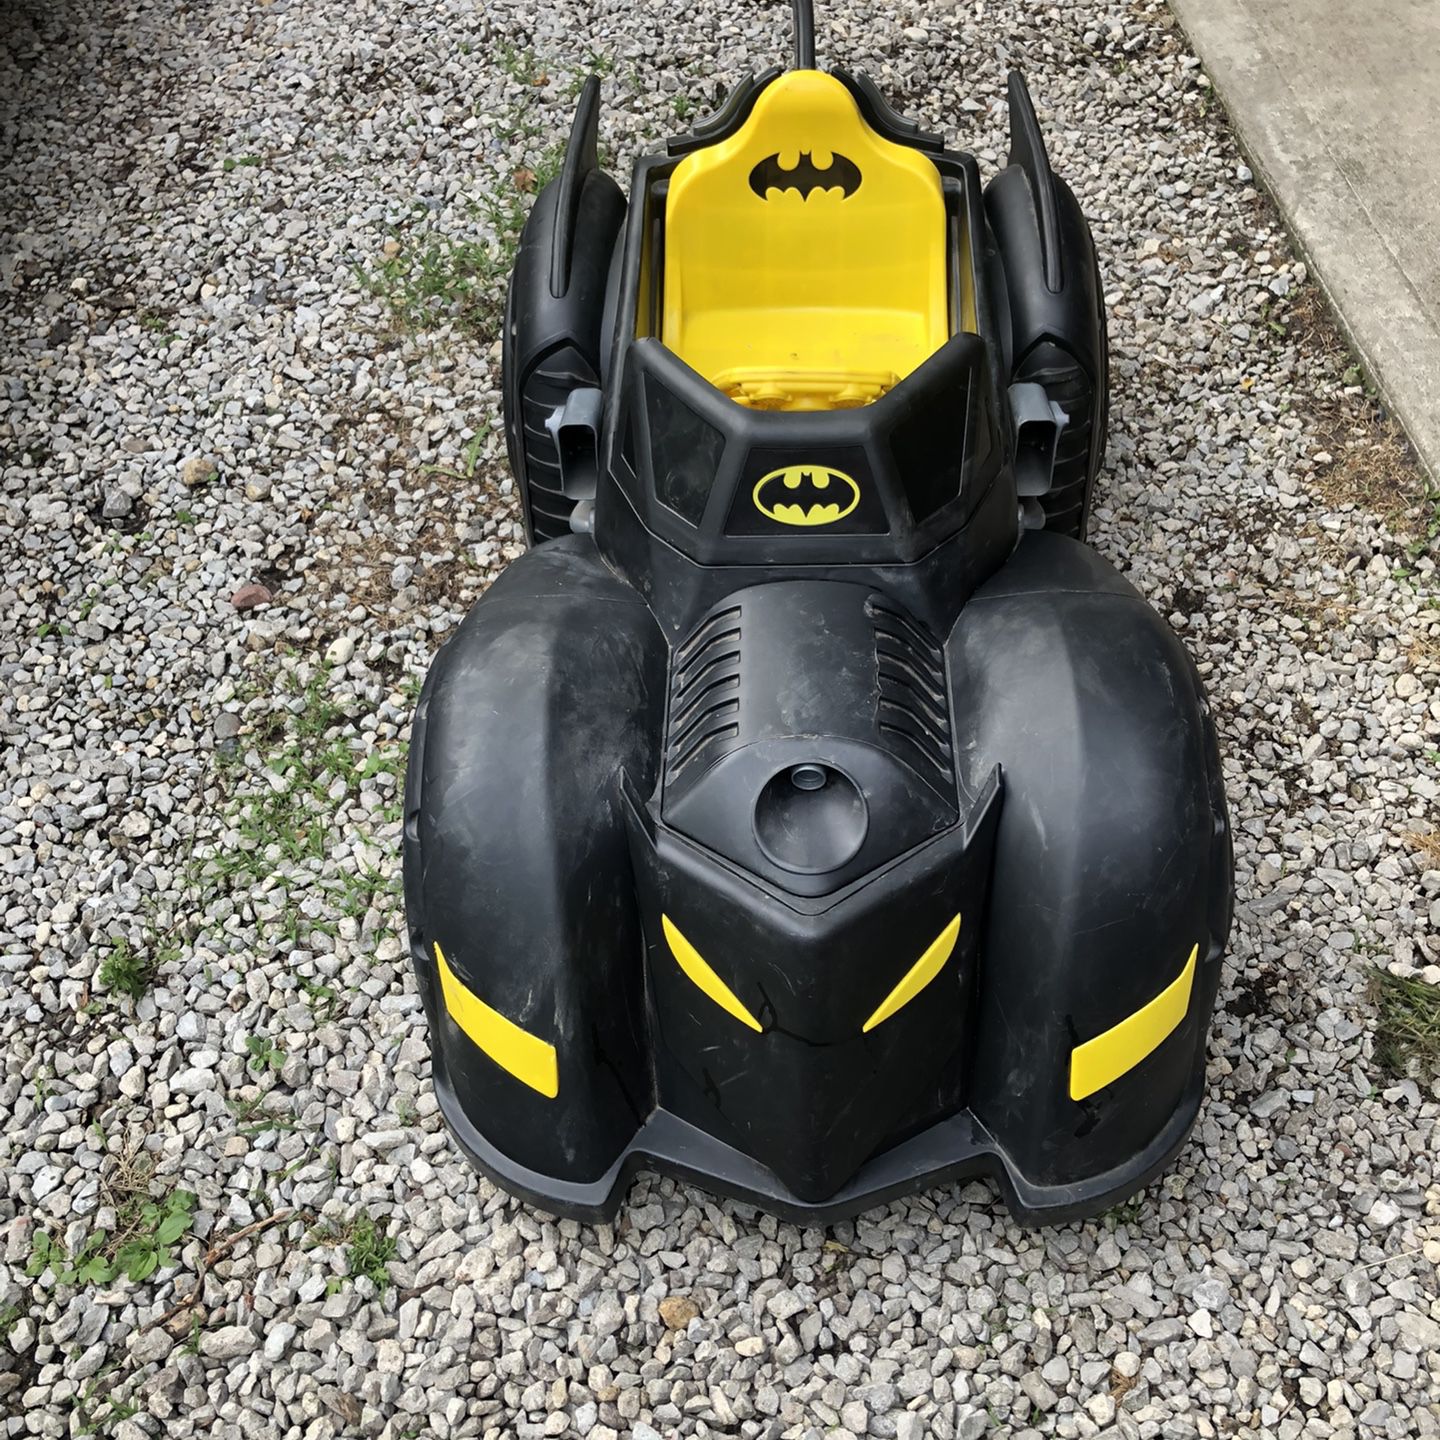 Batman Batmobile Power Wheels for Sale in Knightstown, IN - OfferUp